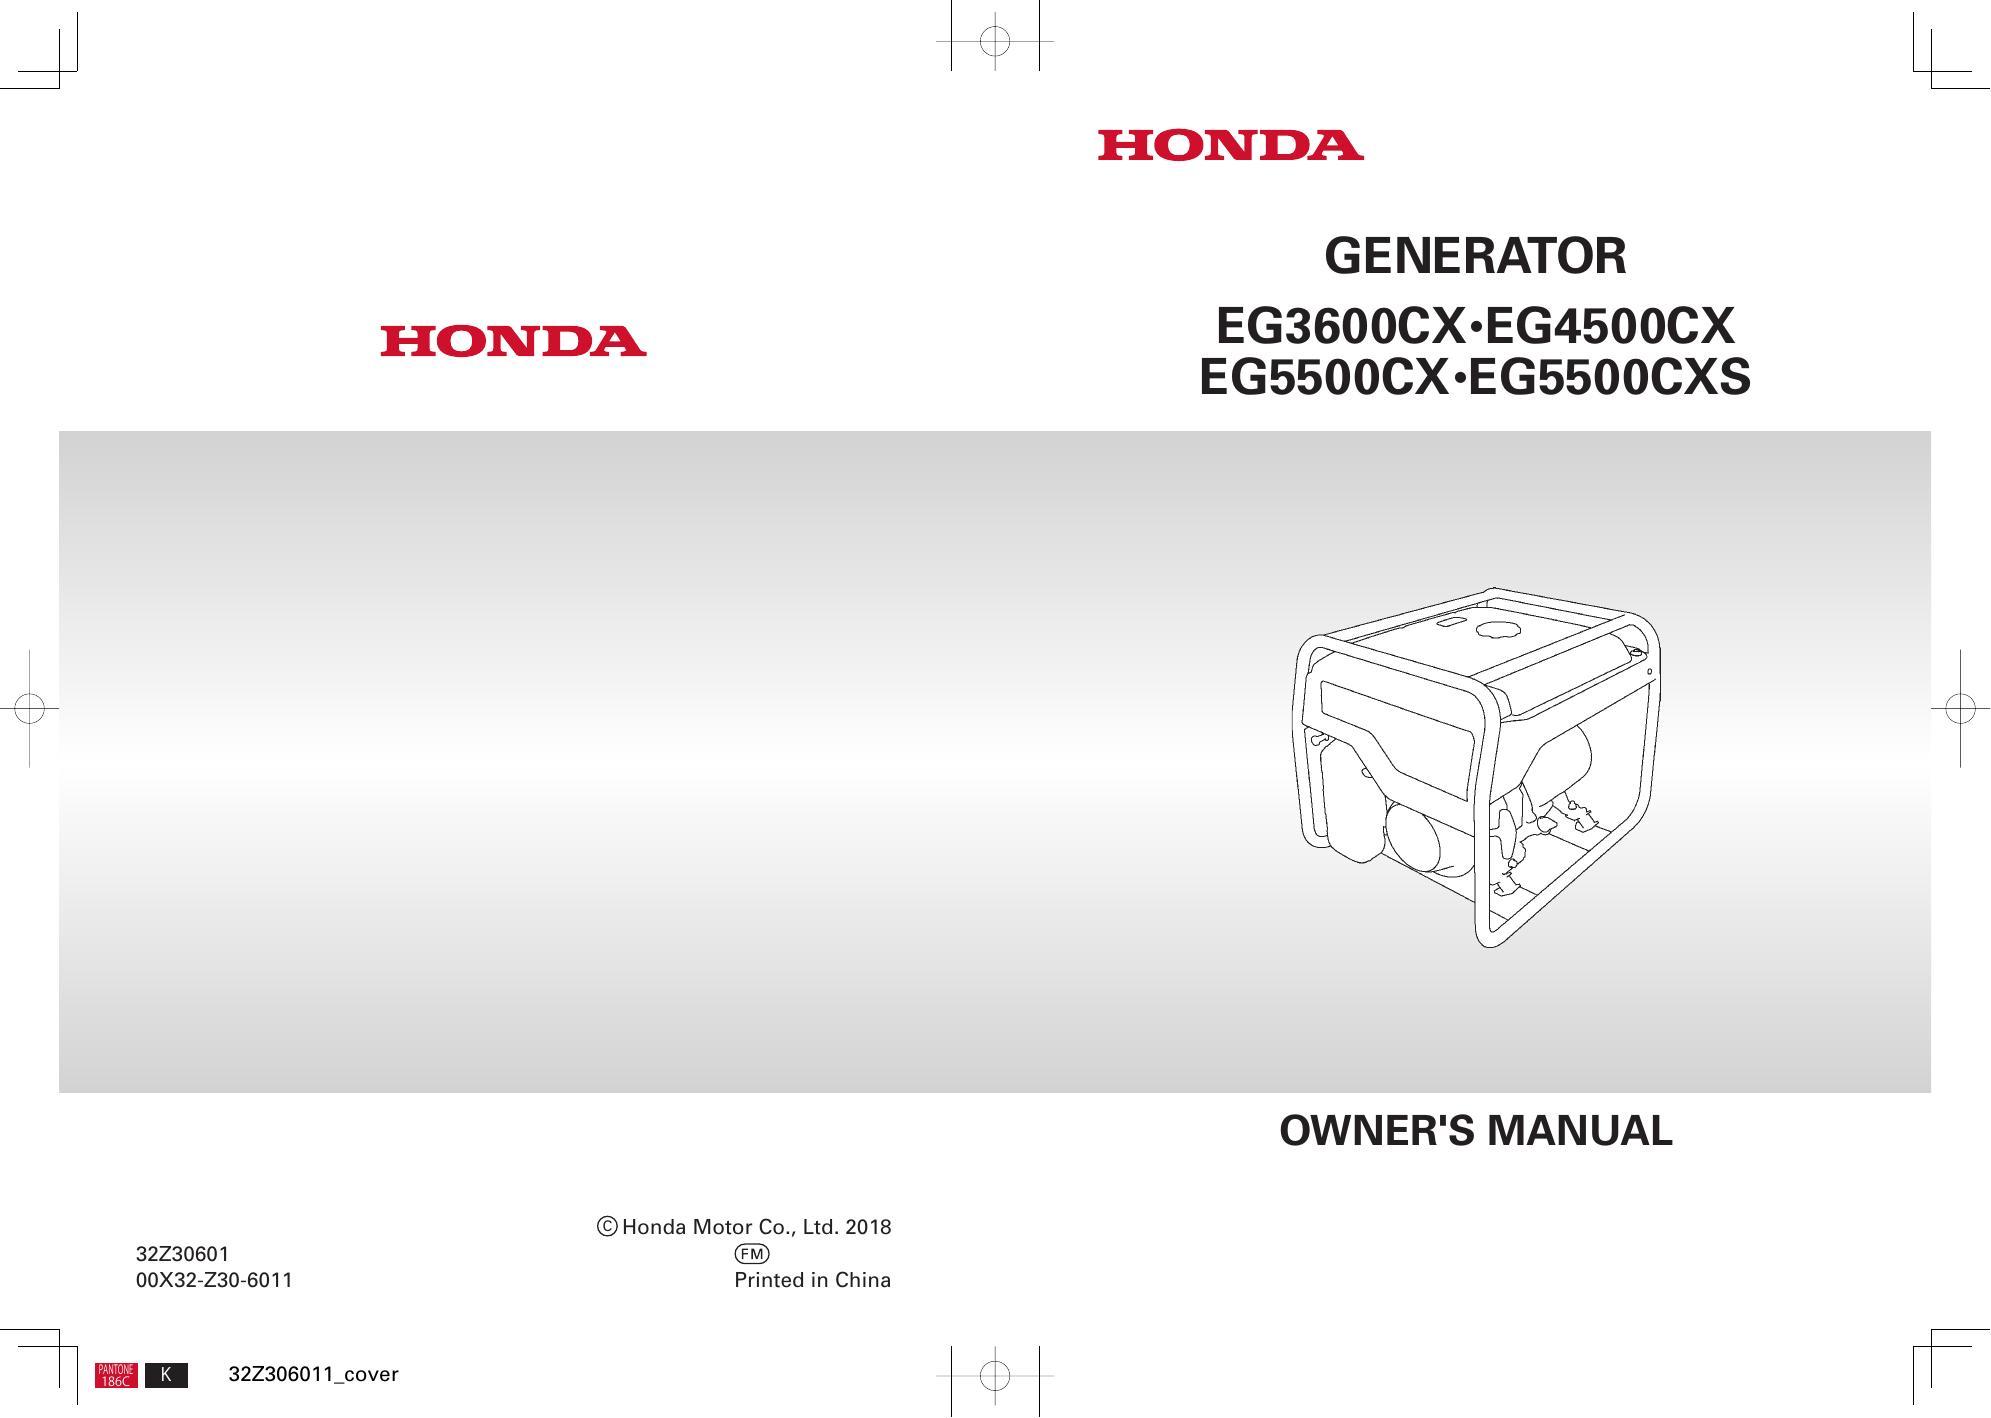 honda-eg3600cx-eg4500cx-egssoo-cx-egssoo-cxs-owners-manual.pdf